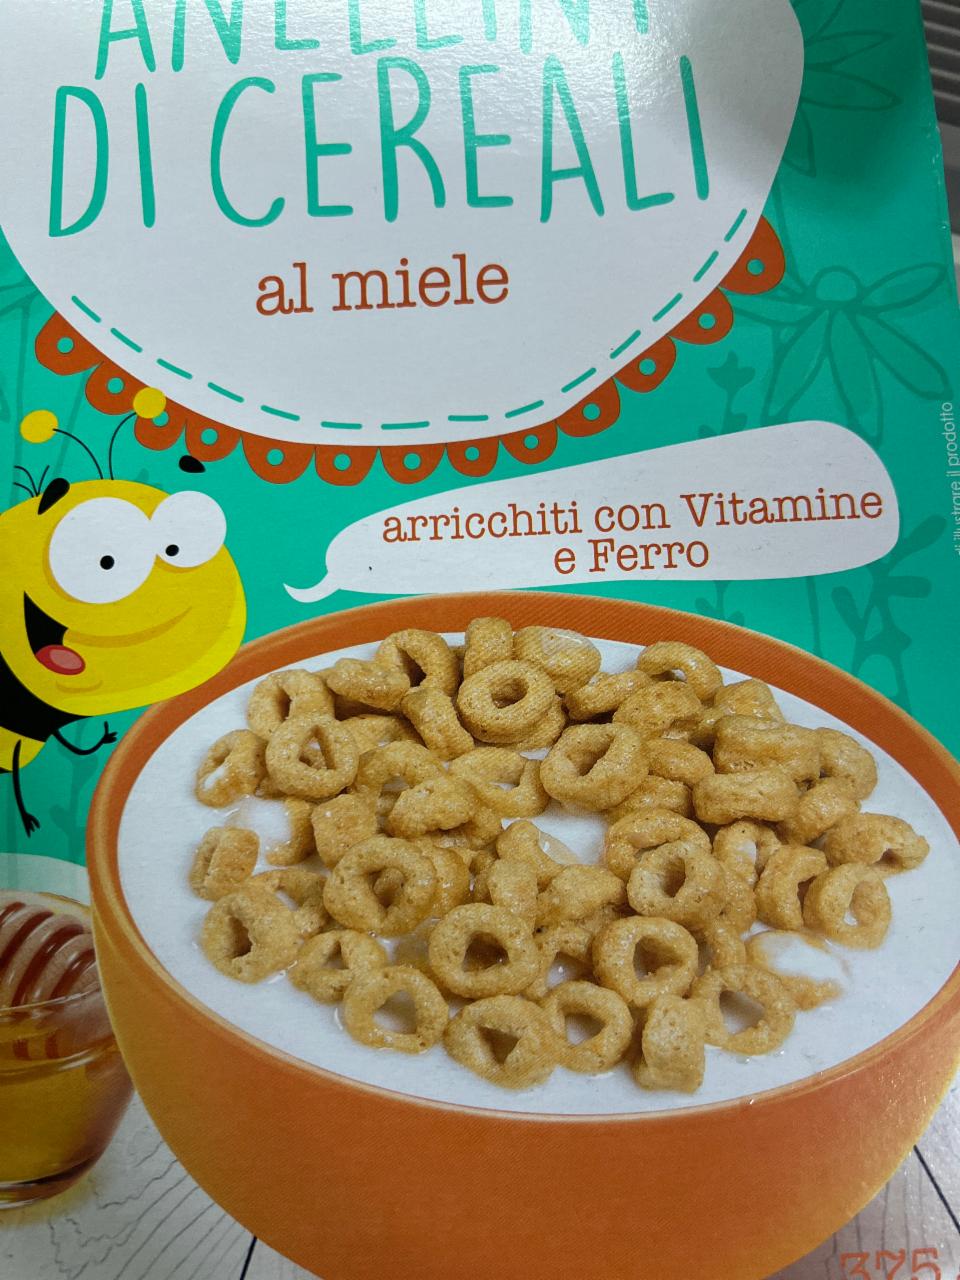 Фото - Anellini di cereali Primia